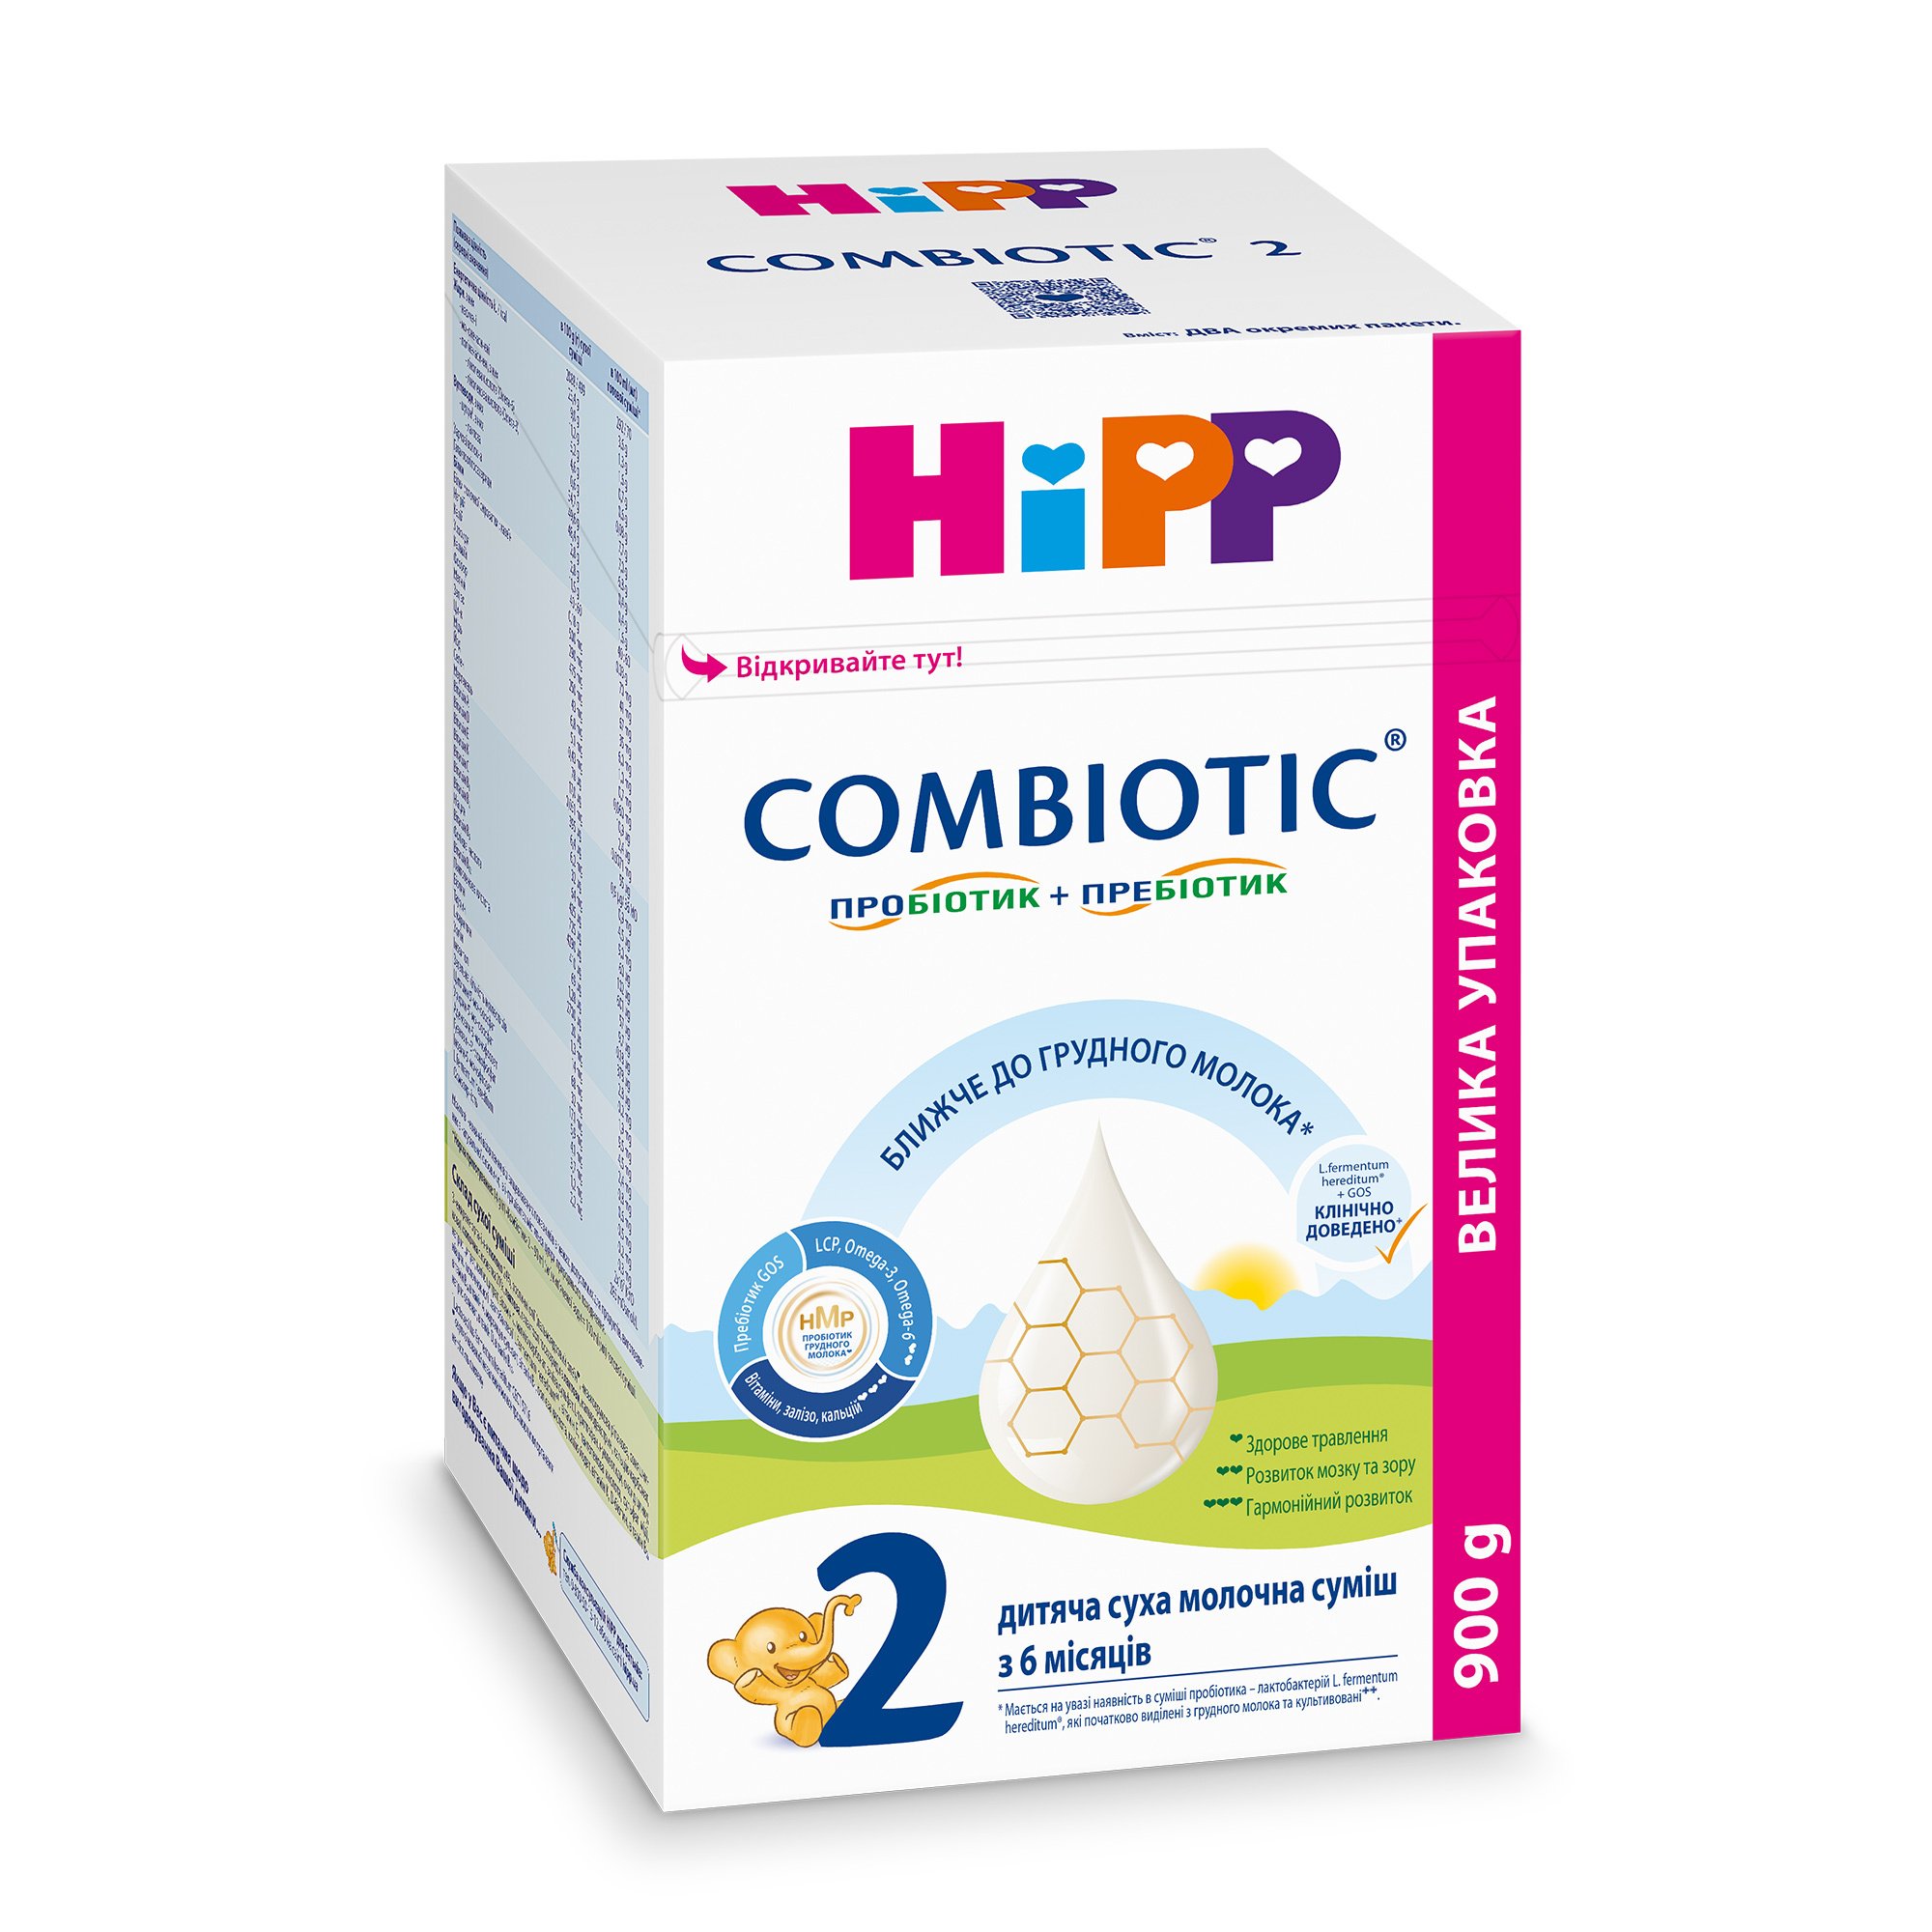 Суха молочна суміш HiPP Combiotic 2, 900 г - фото 1